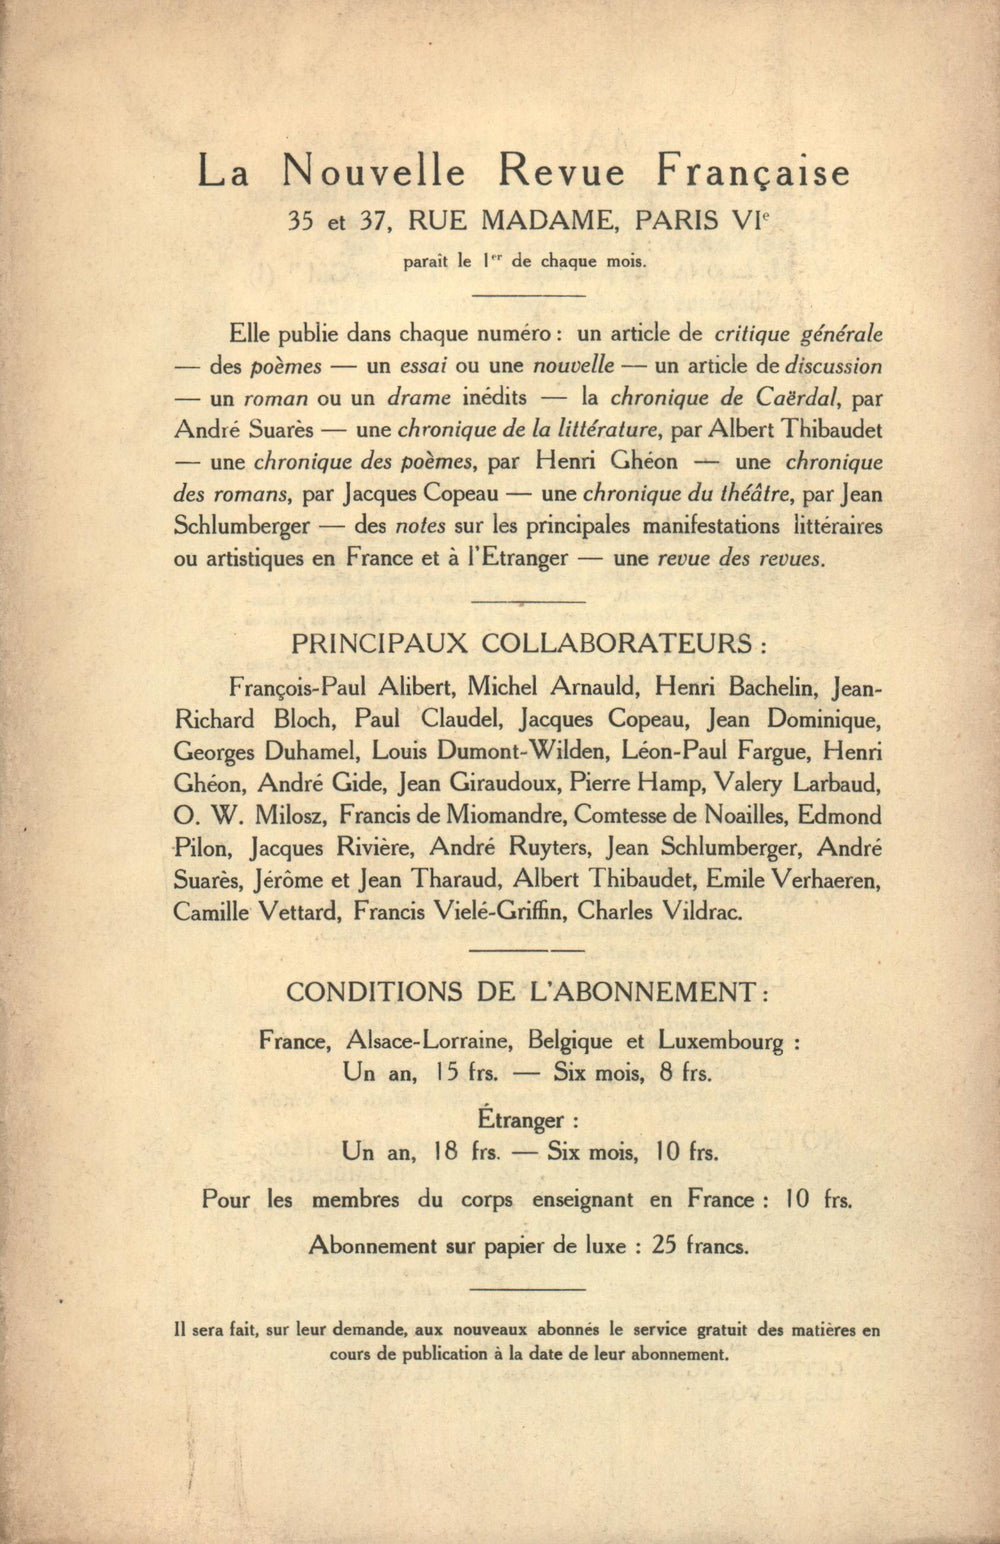 La Nouvelle Revue Française N' 51 (Mars 1913)